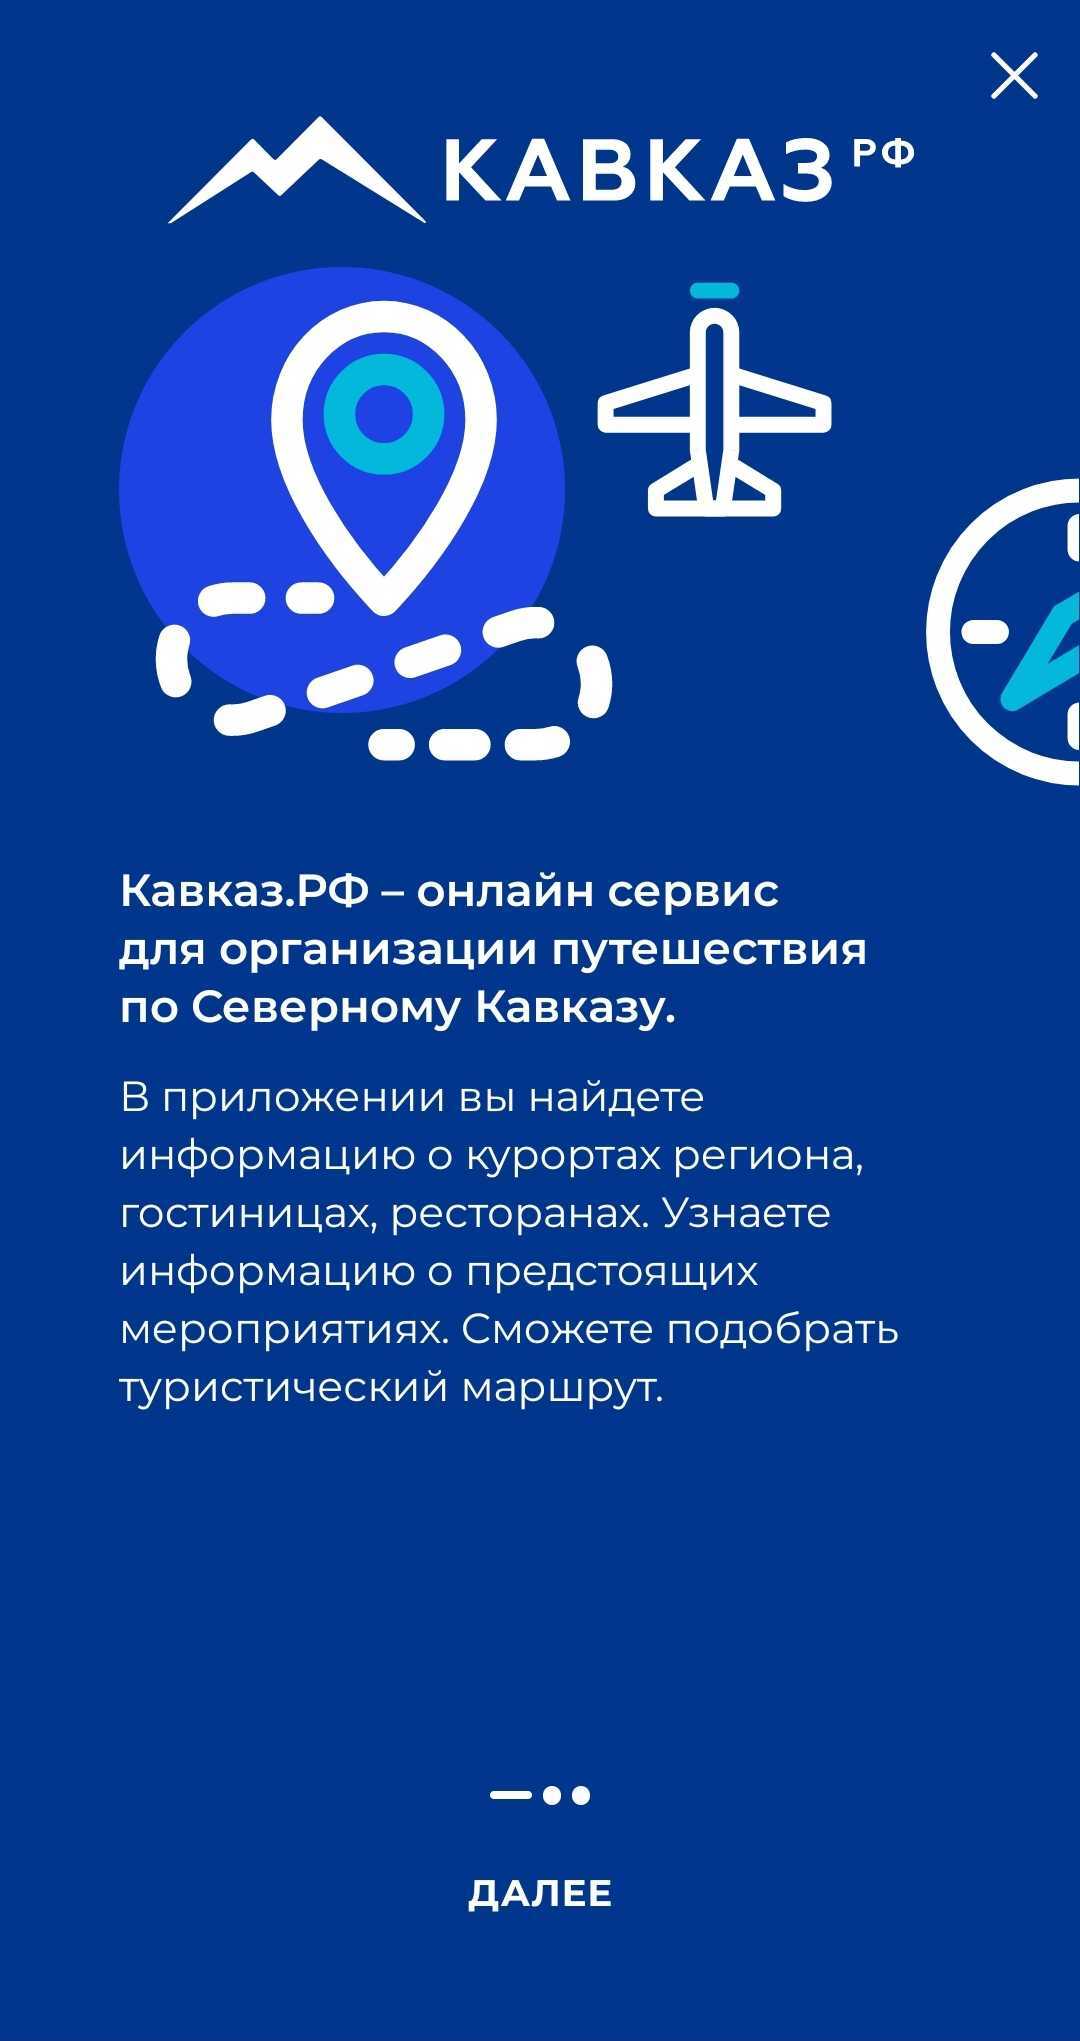 КАВКАЗ.РФ – Скачать Приложение Для Android – Каталог RuStore